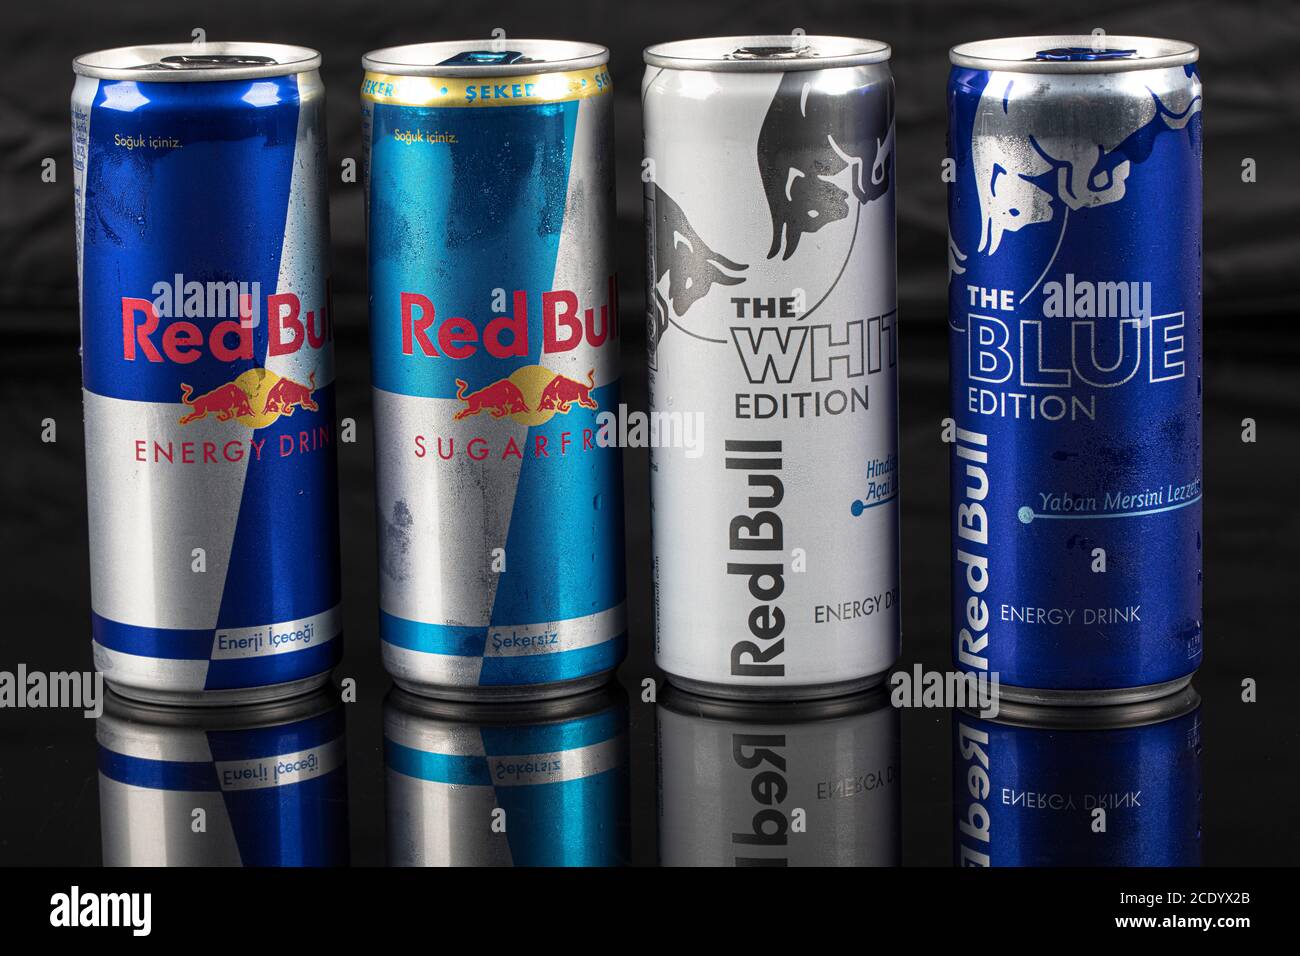 Chiếc lon Red Bull sẽ khiến cho bạn cảm thấy như đã sẵn sàng để chiến đấu với mọi thử thách. Hình ảnh Red Bull can này mang đến cho bạn một cảm giác mạnh mẽ và sự sống động của sản phẩm. Hãy xem hình ảnh để tận hưởng sức mạnh và năng lượng từ Red Bull.